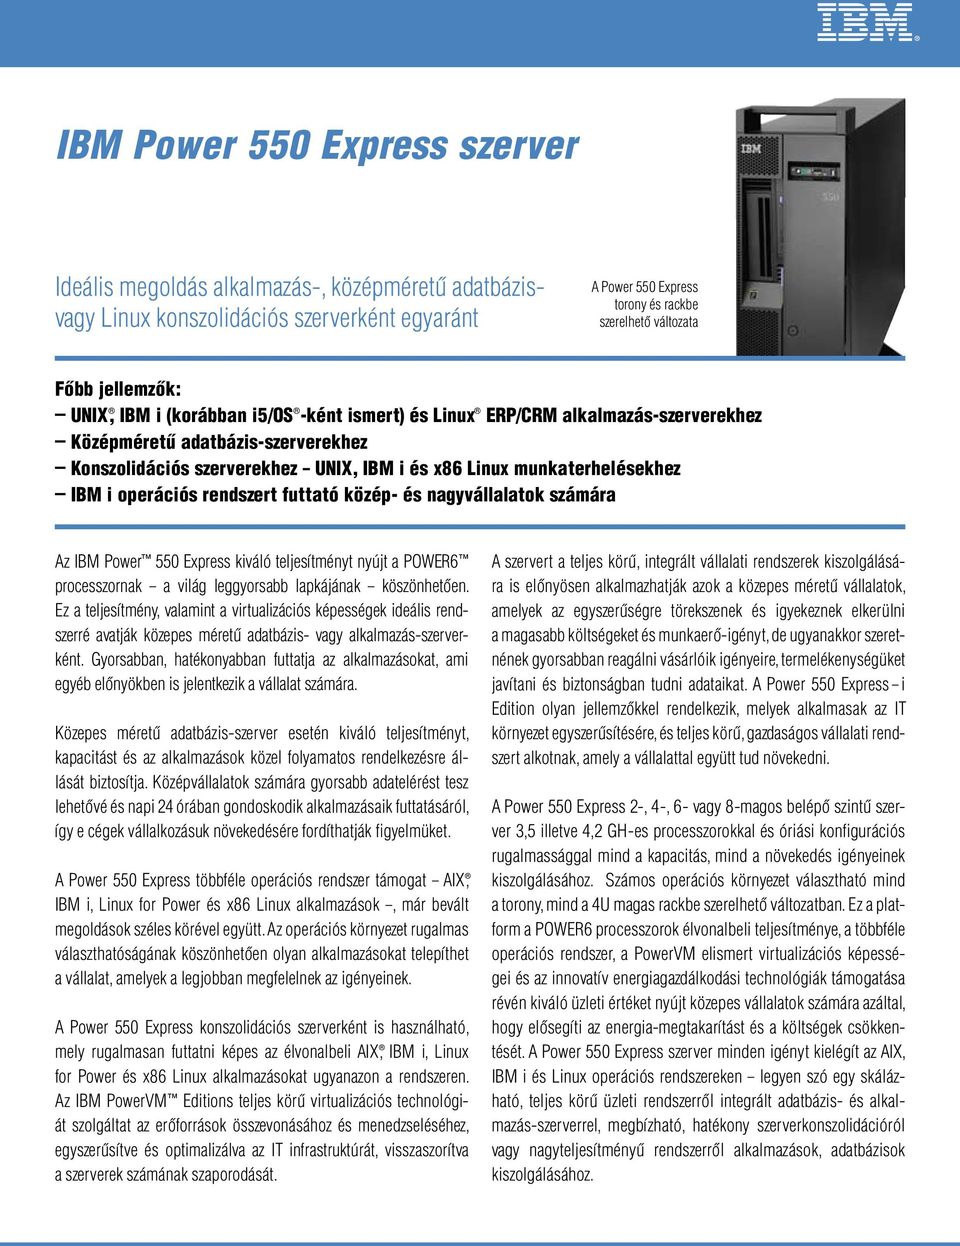 munkaterhelésekhez IBM i operációs rendszert futtató közép- és nagyvállalatok számára Az IBM Power 550 Express kiváló teljesítményt nyújt a POWER6 processzornak a világ leggyorsabb lapkájának